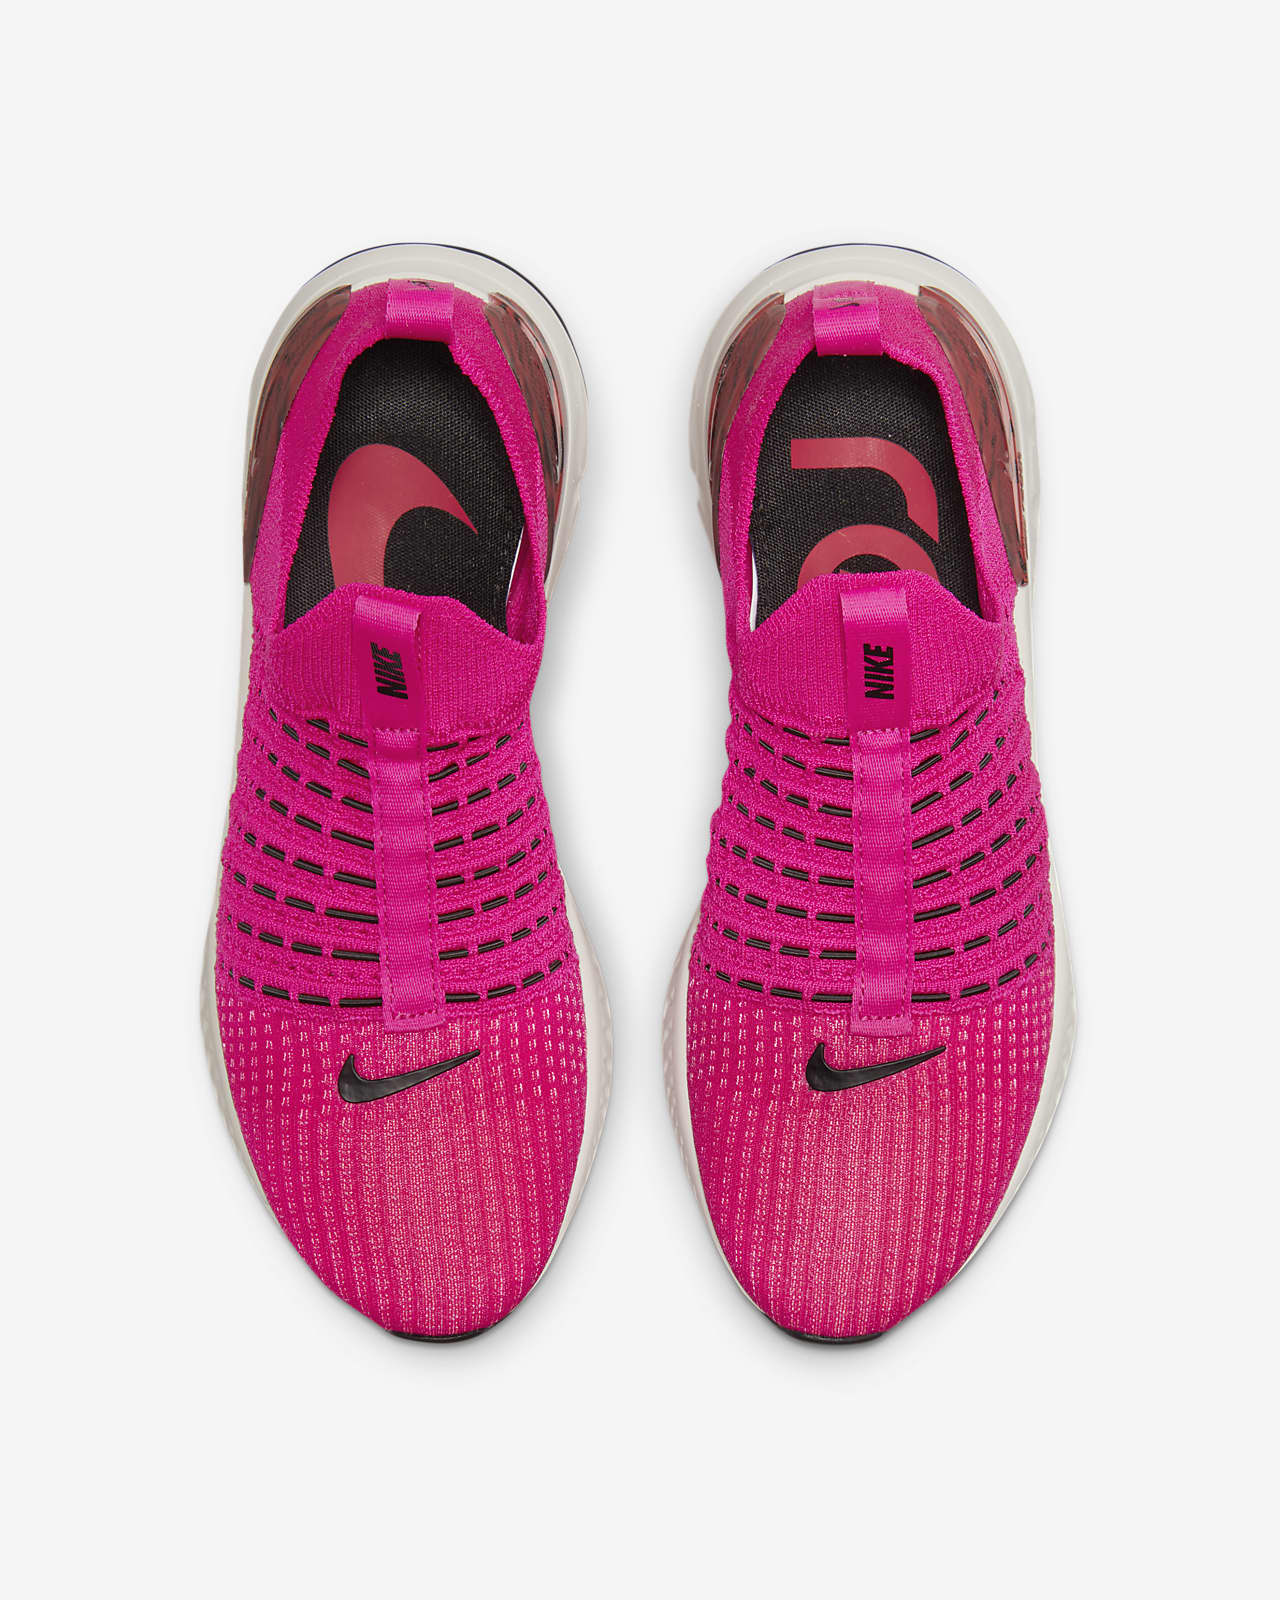 nike react phantom run flyknit 2 pink Women's Shoe